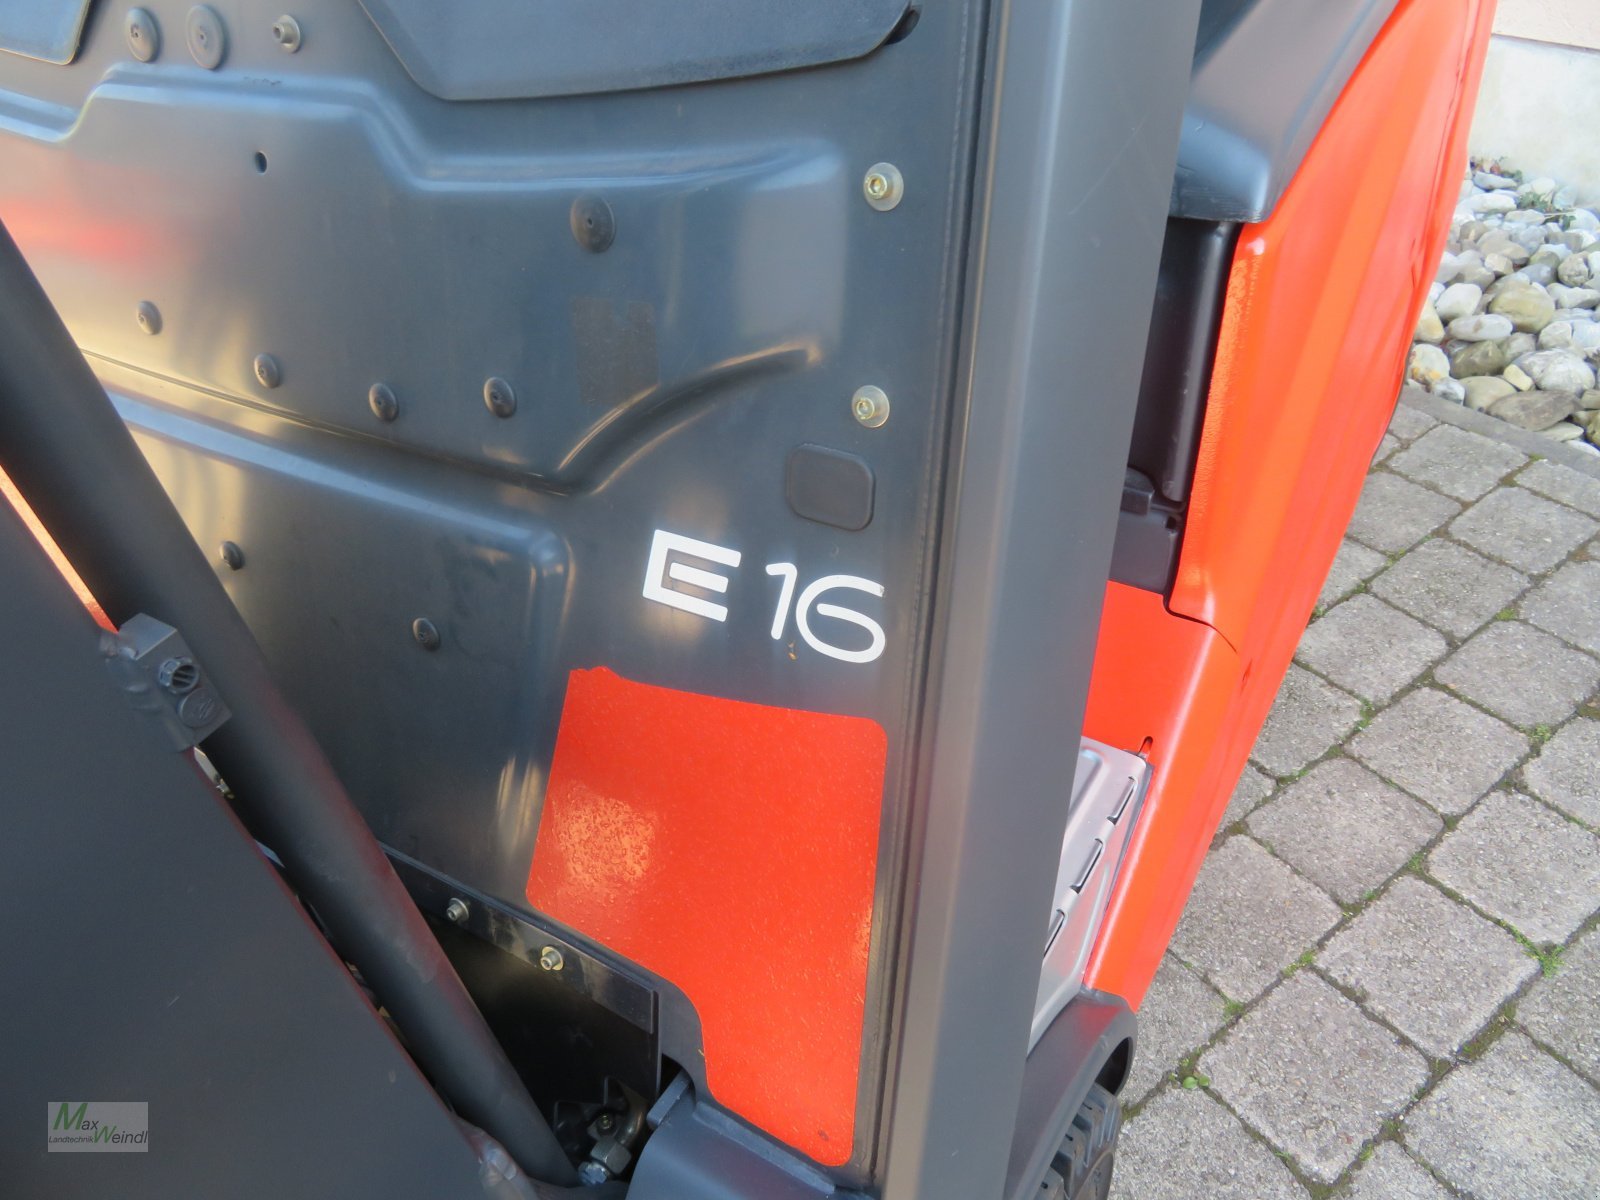 Elektrostapler des Typs Linde E 16, Gebrauchtmaschine in Markt Schwaben (Bild 5)